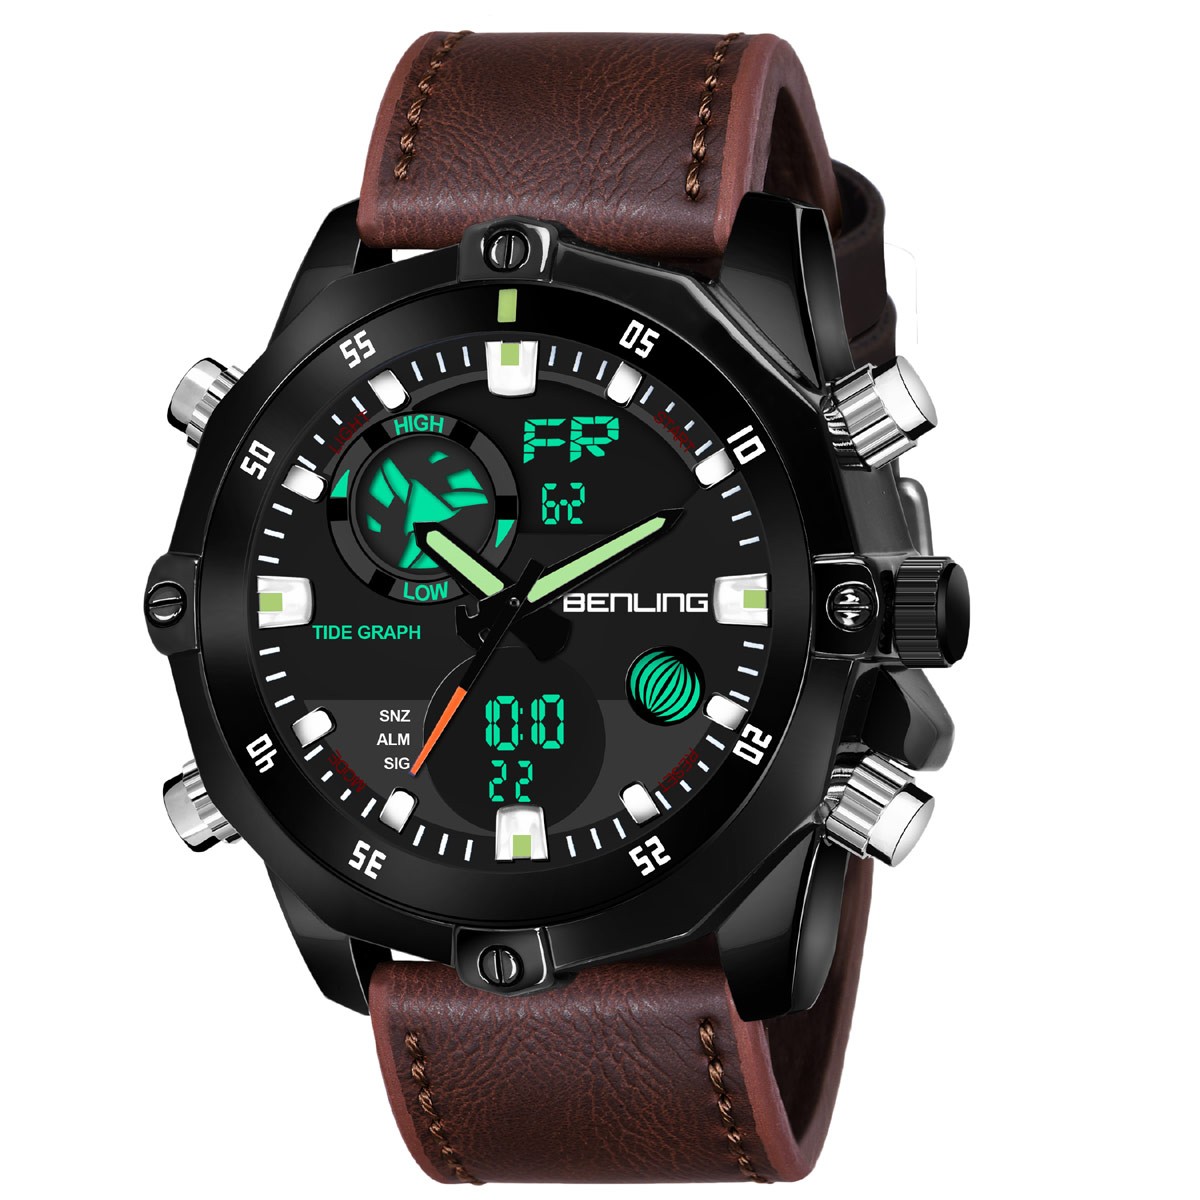 RISTOS Men Sport Watch R-9338 | witty watches online shop